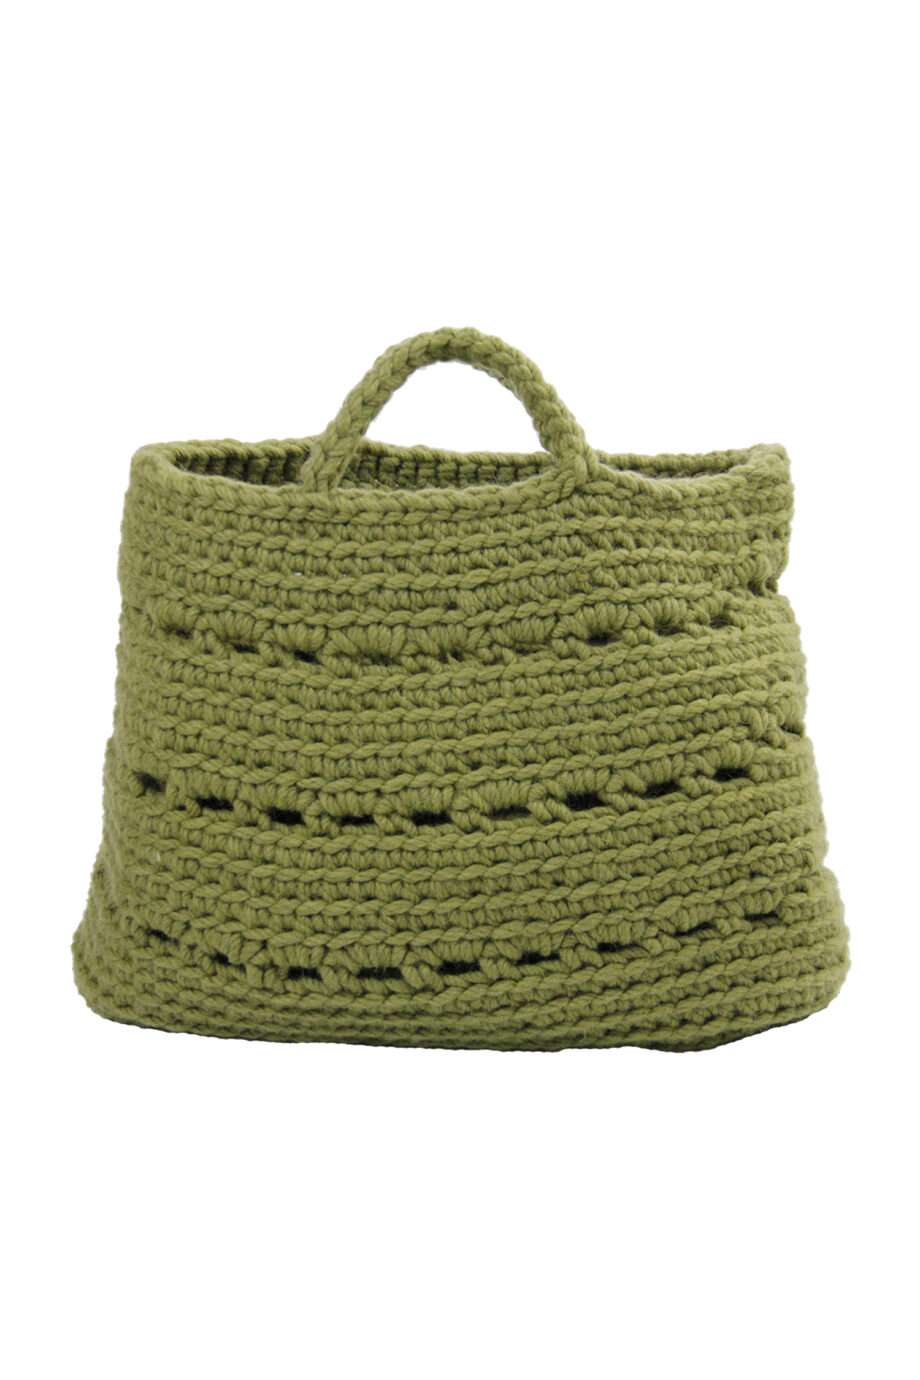 basic olive green crochet woolen basket xlarge